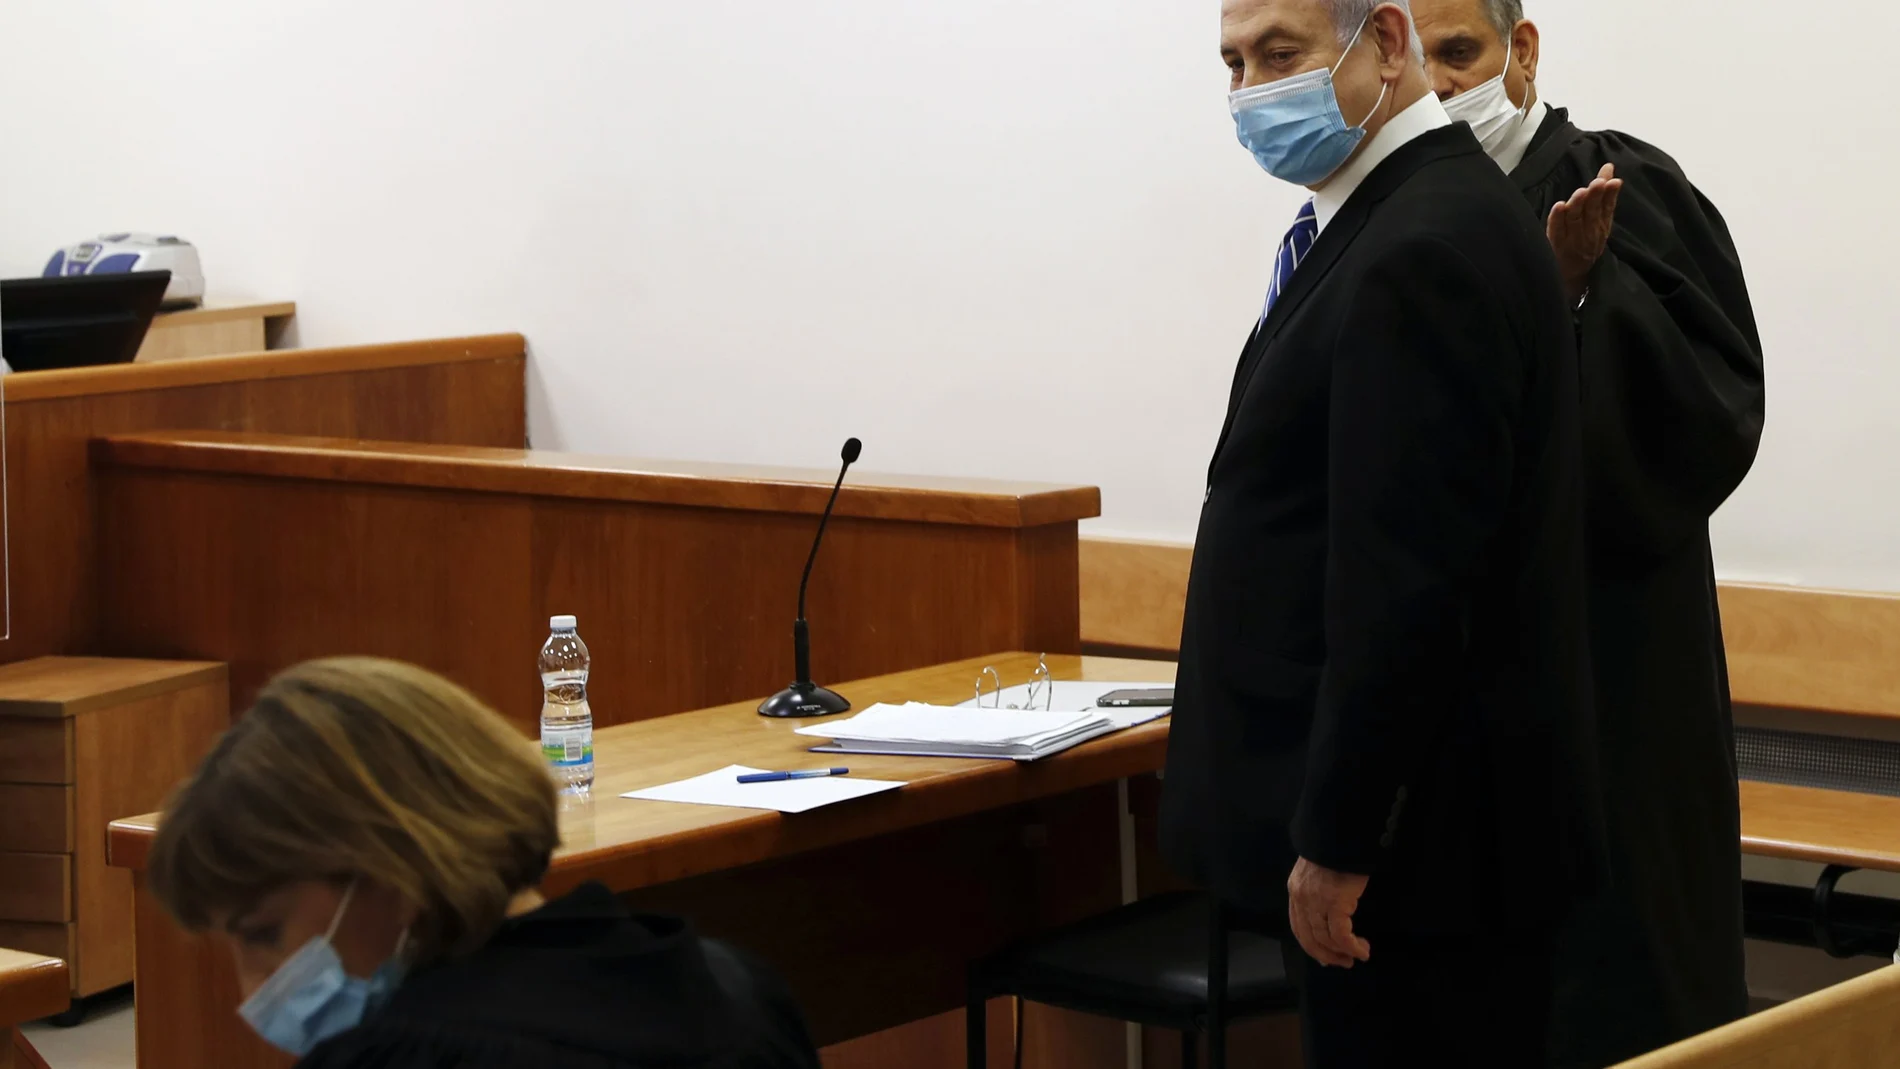 El "premier" israelí, Benjamin Netanyahu, junto a su abogado, en el tribunal que lo juzga en Jerusalén